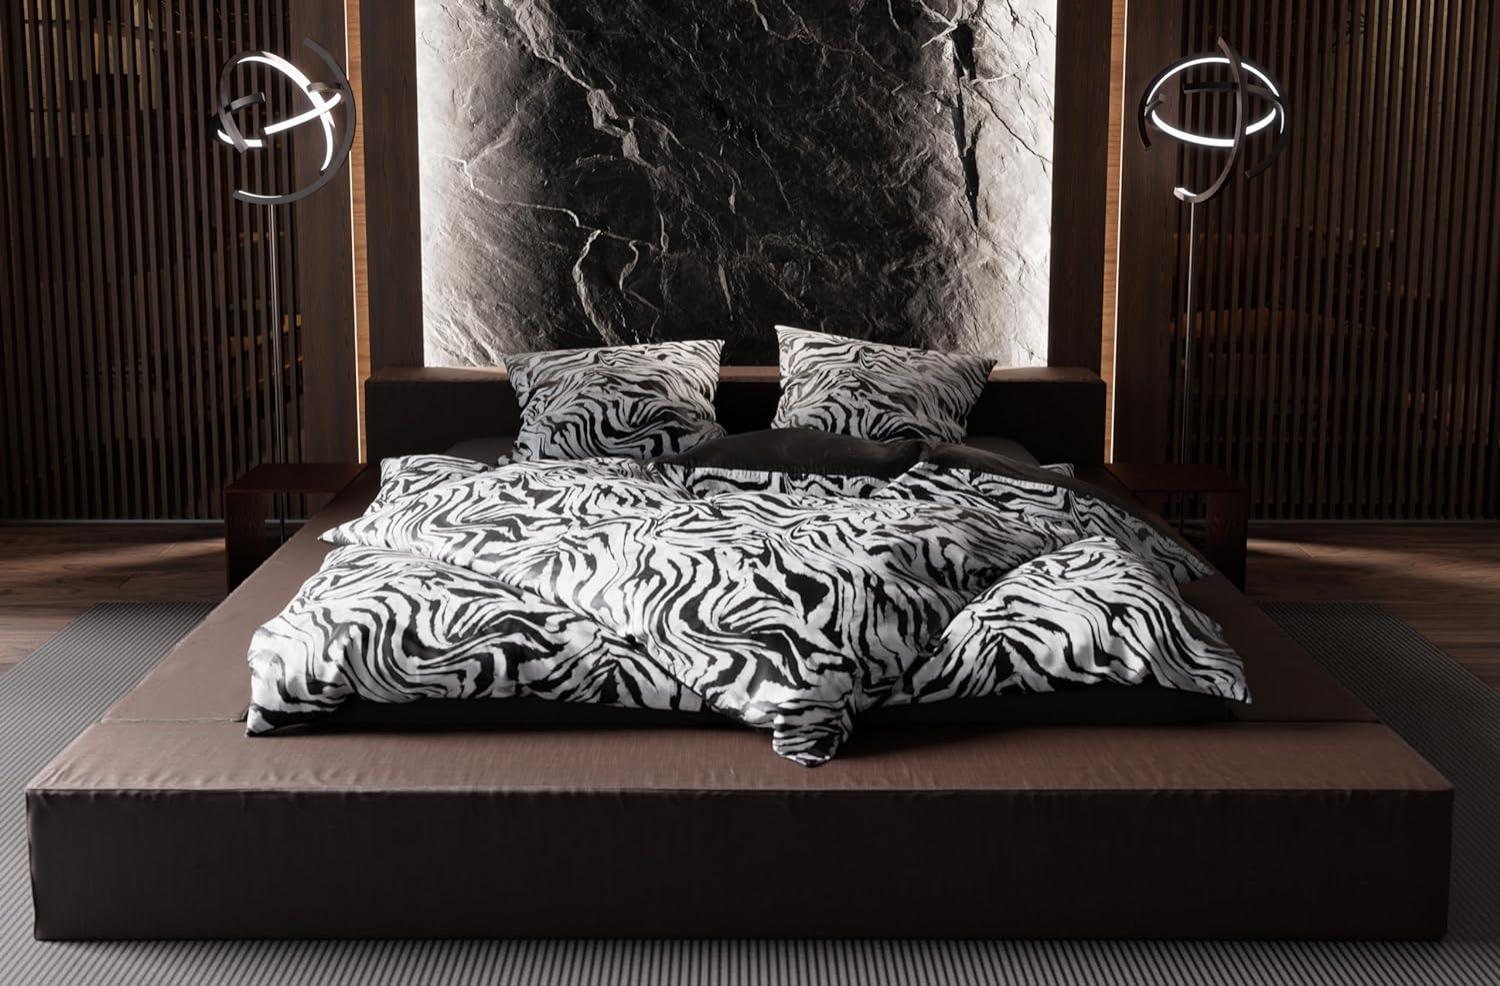 Moderne Mako Satin Wende Bettwäsche Zebra Muster schwarz weiß 155x200 + 80x80 Bild 1